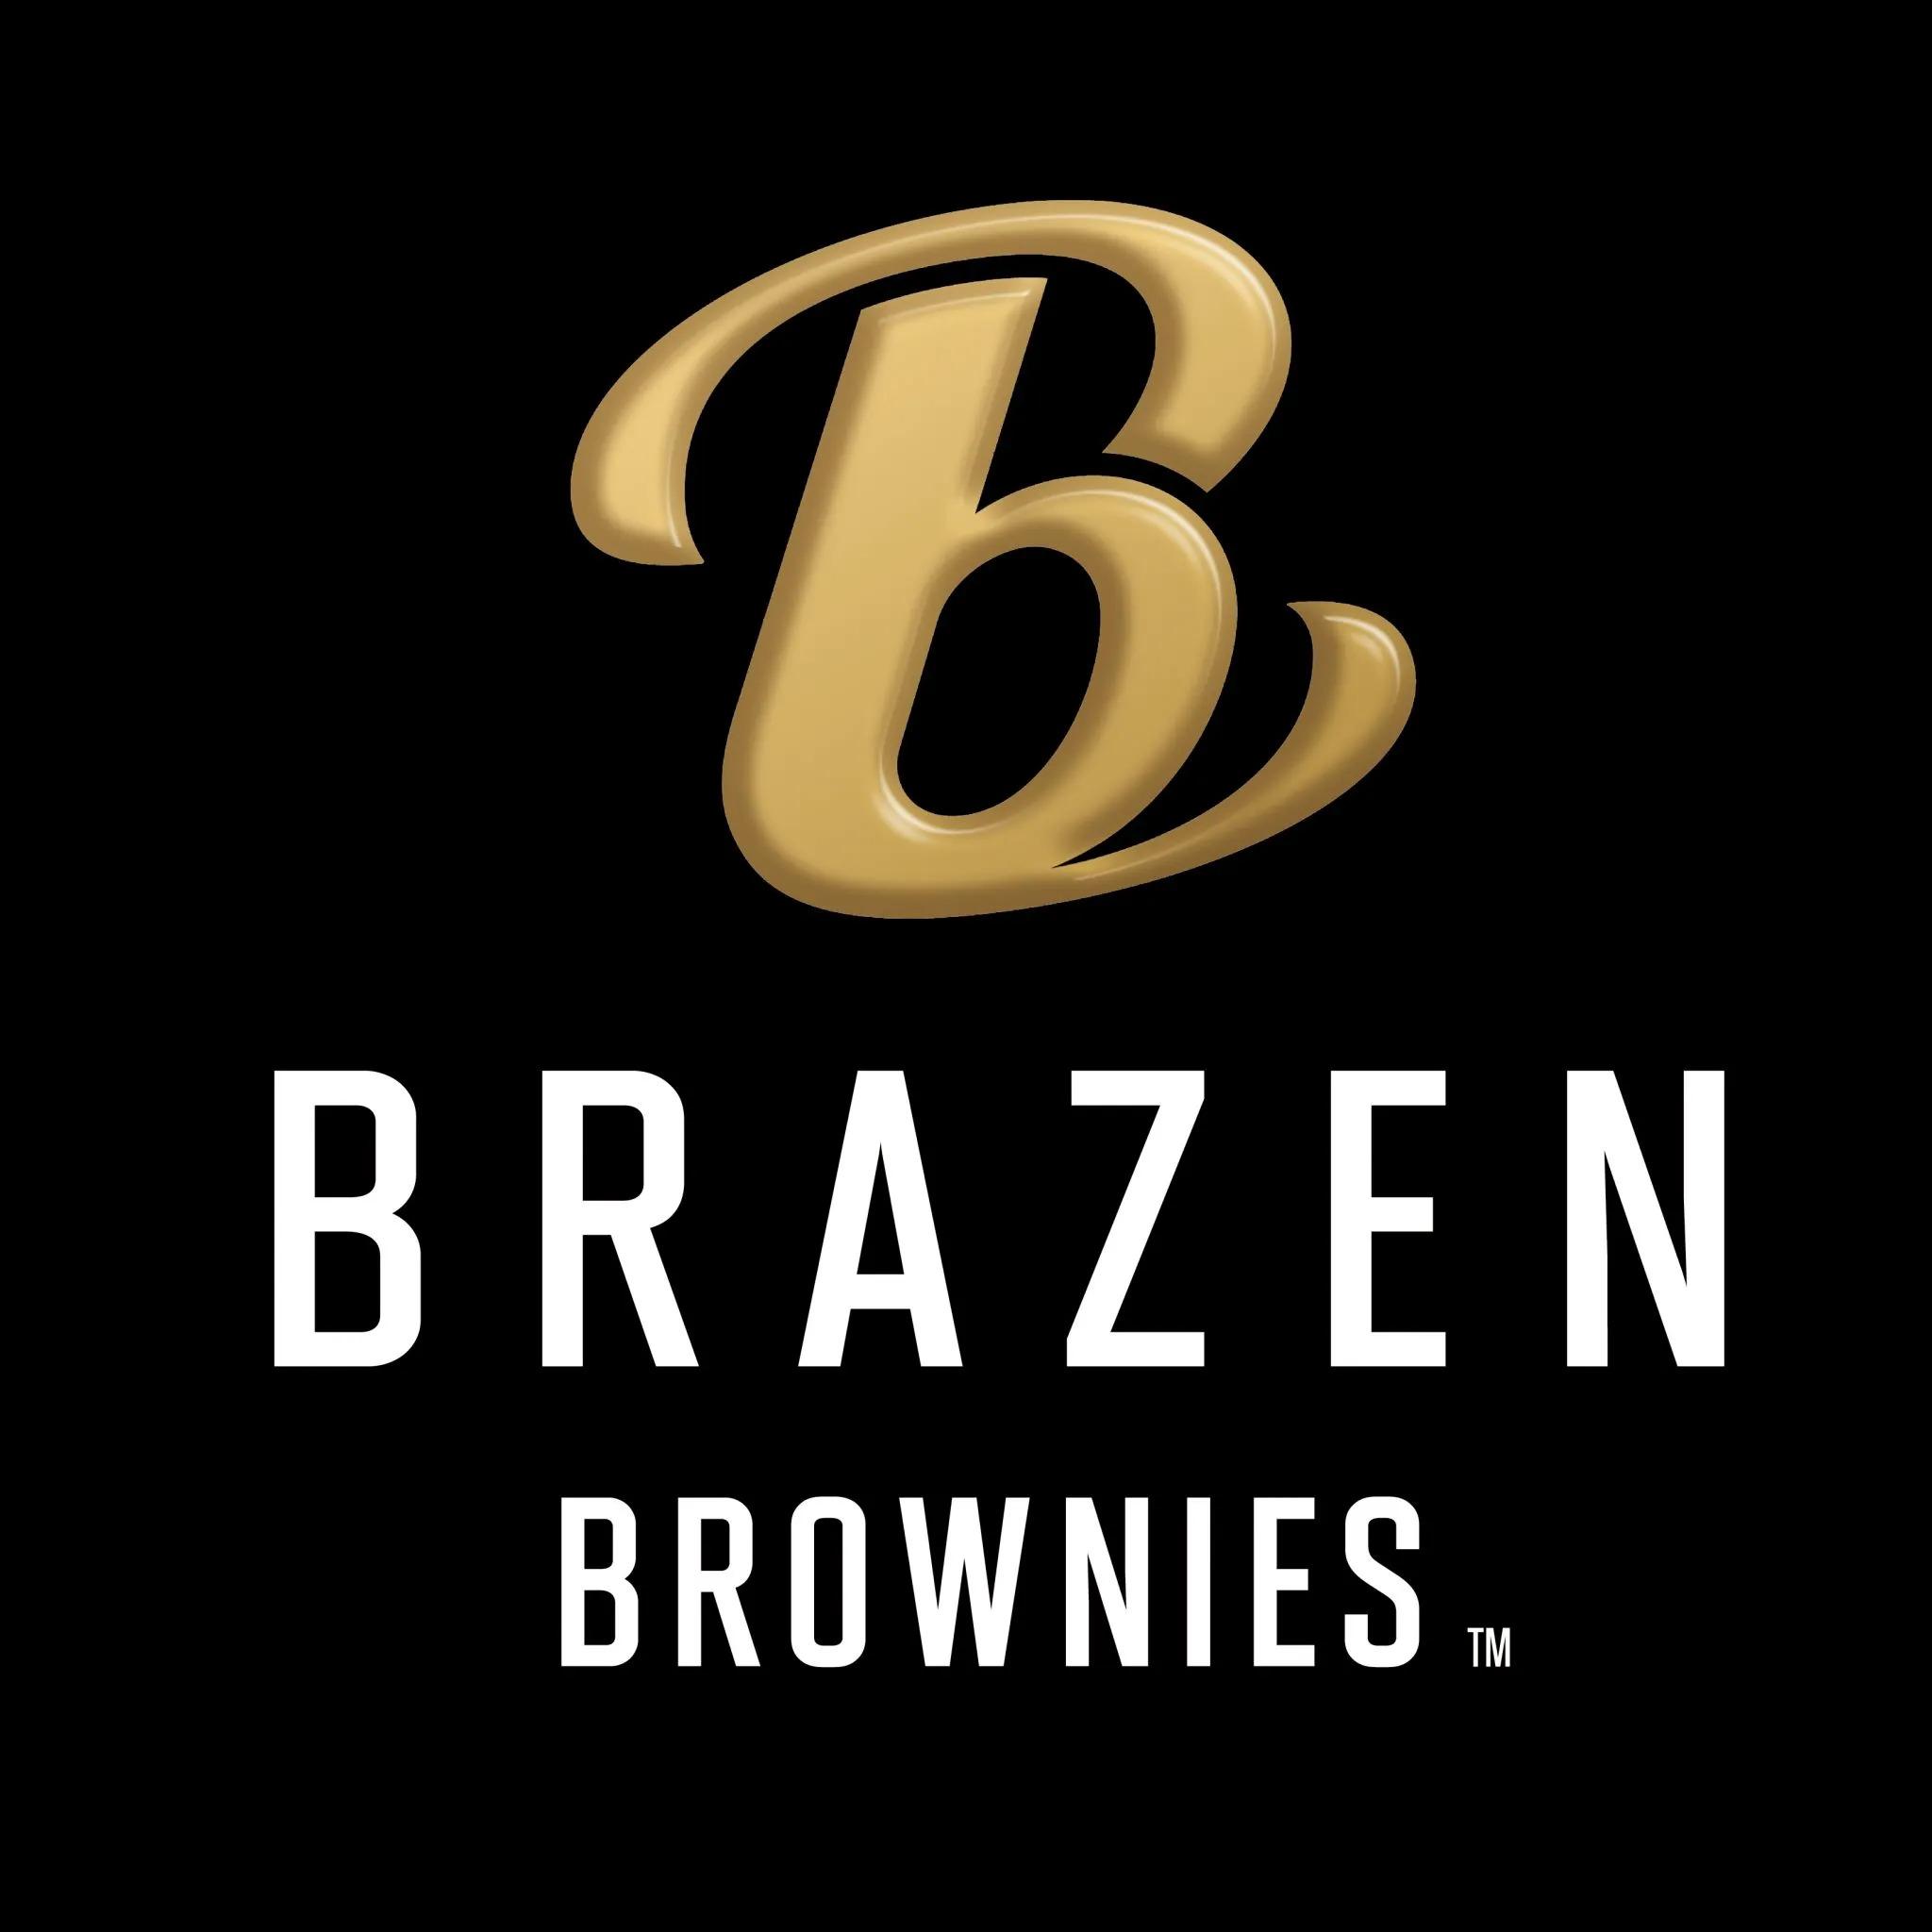 Brazen Brownies